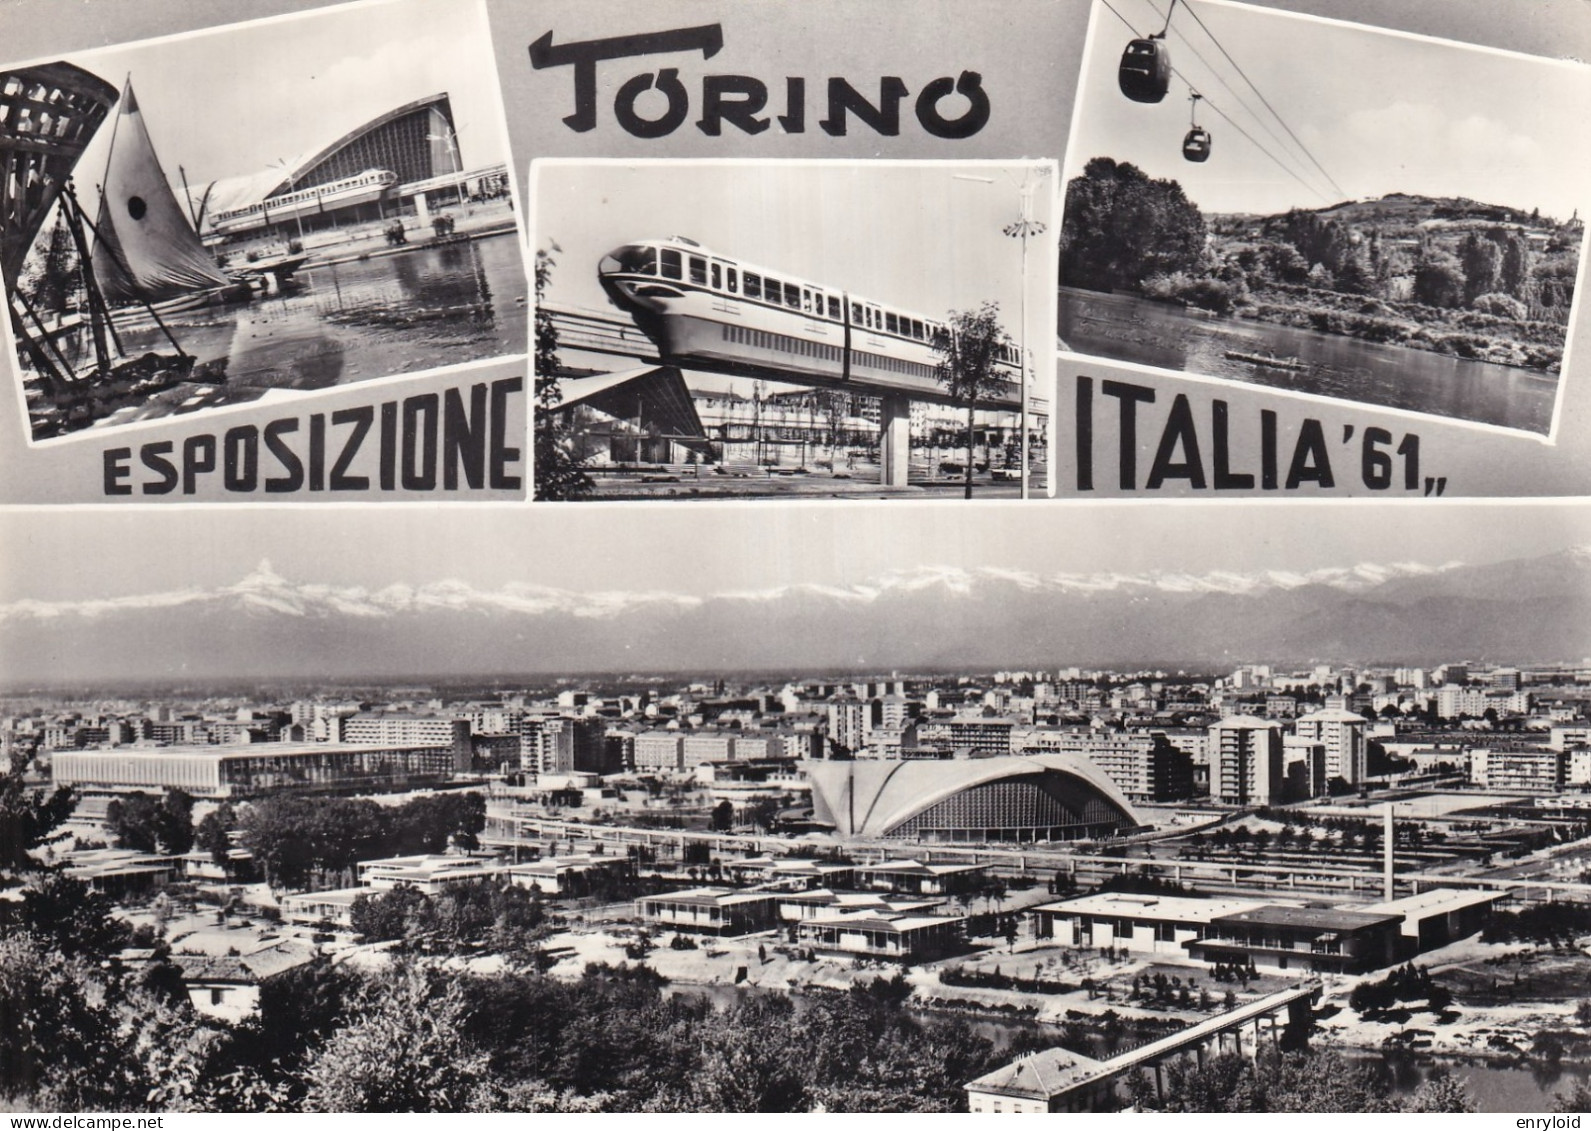 Torino Esposizione Italia 1961 - Andere Monumente & Gebäude